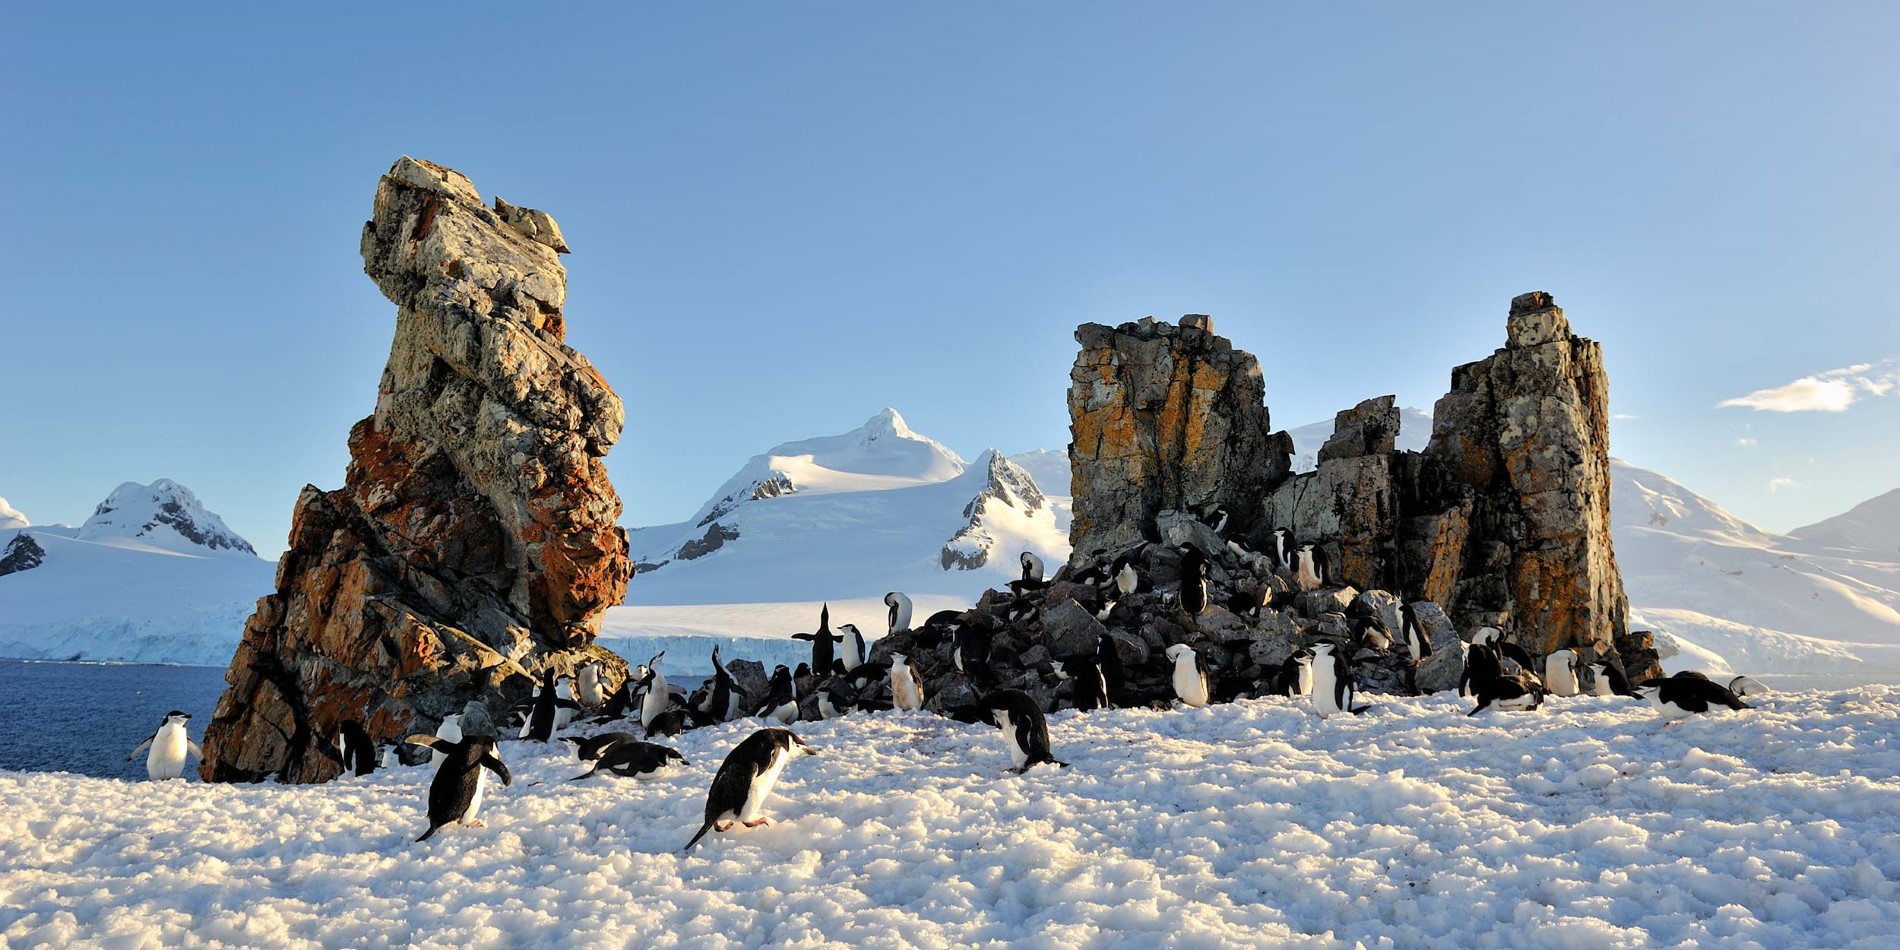 Pingviner i deras naturliga miljö